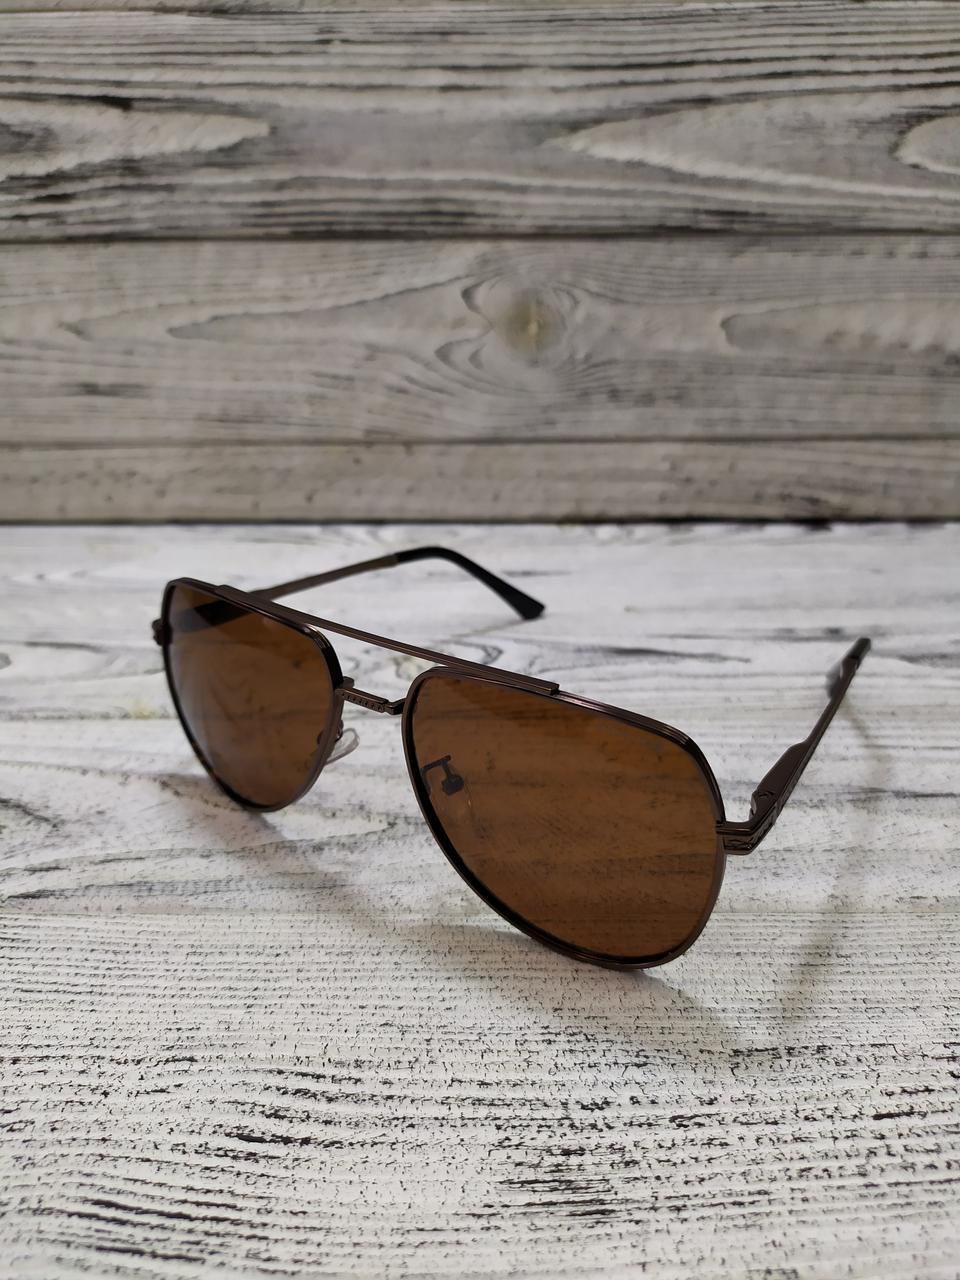 Чоловічі сонцезахисні окуляри коричневі, авіатор, з поляризацією в металевій оправі